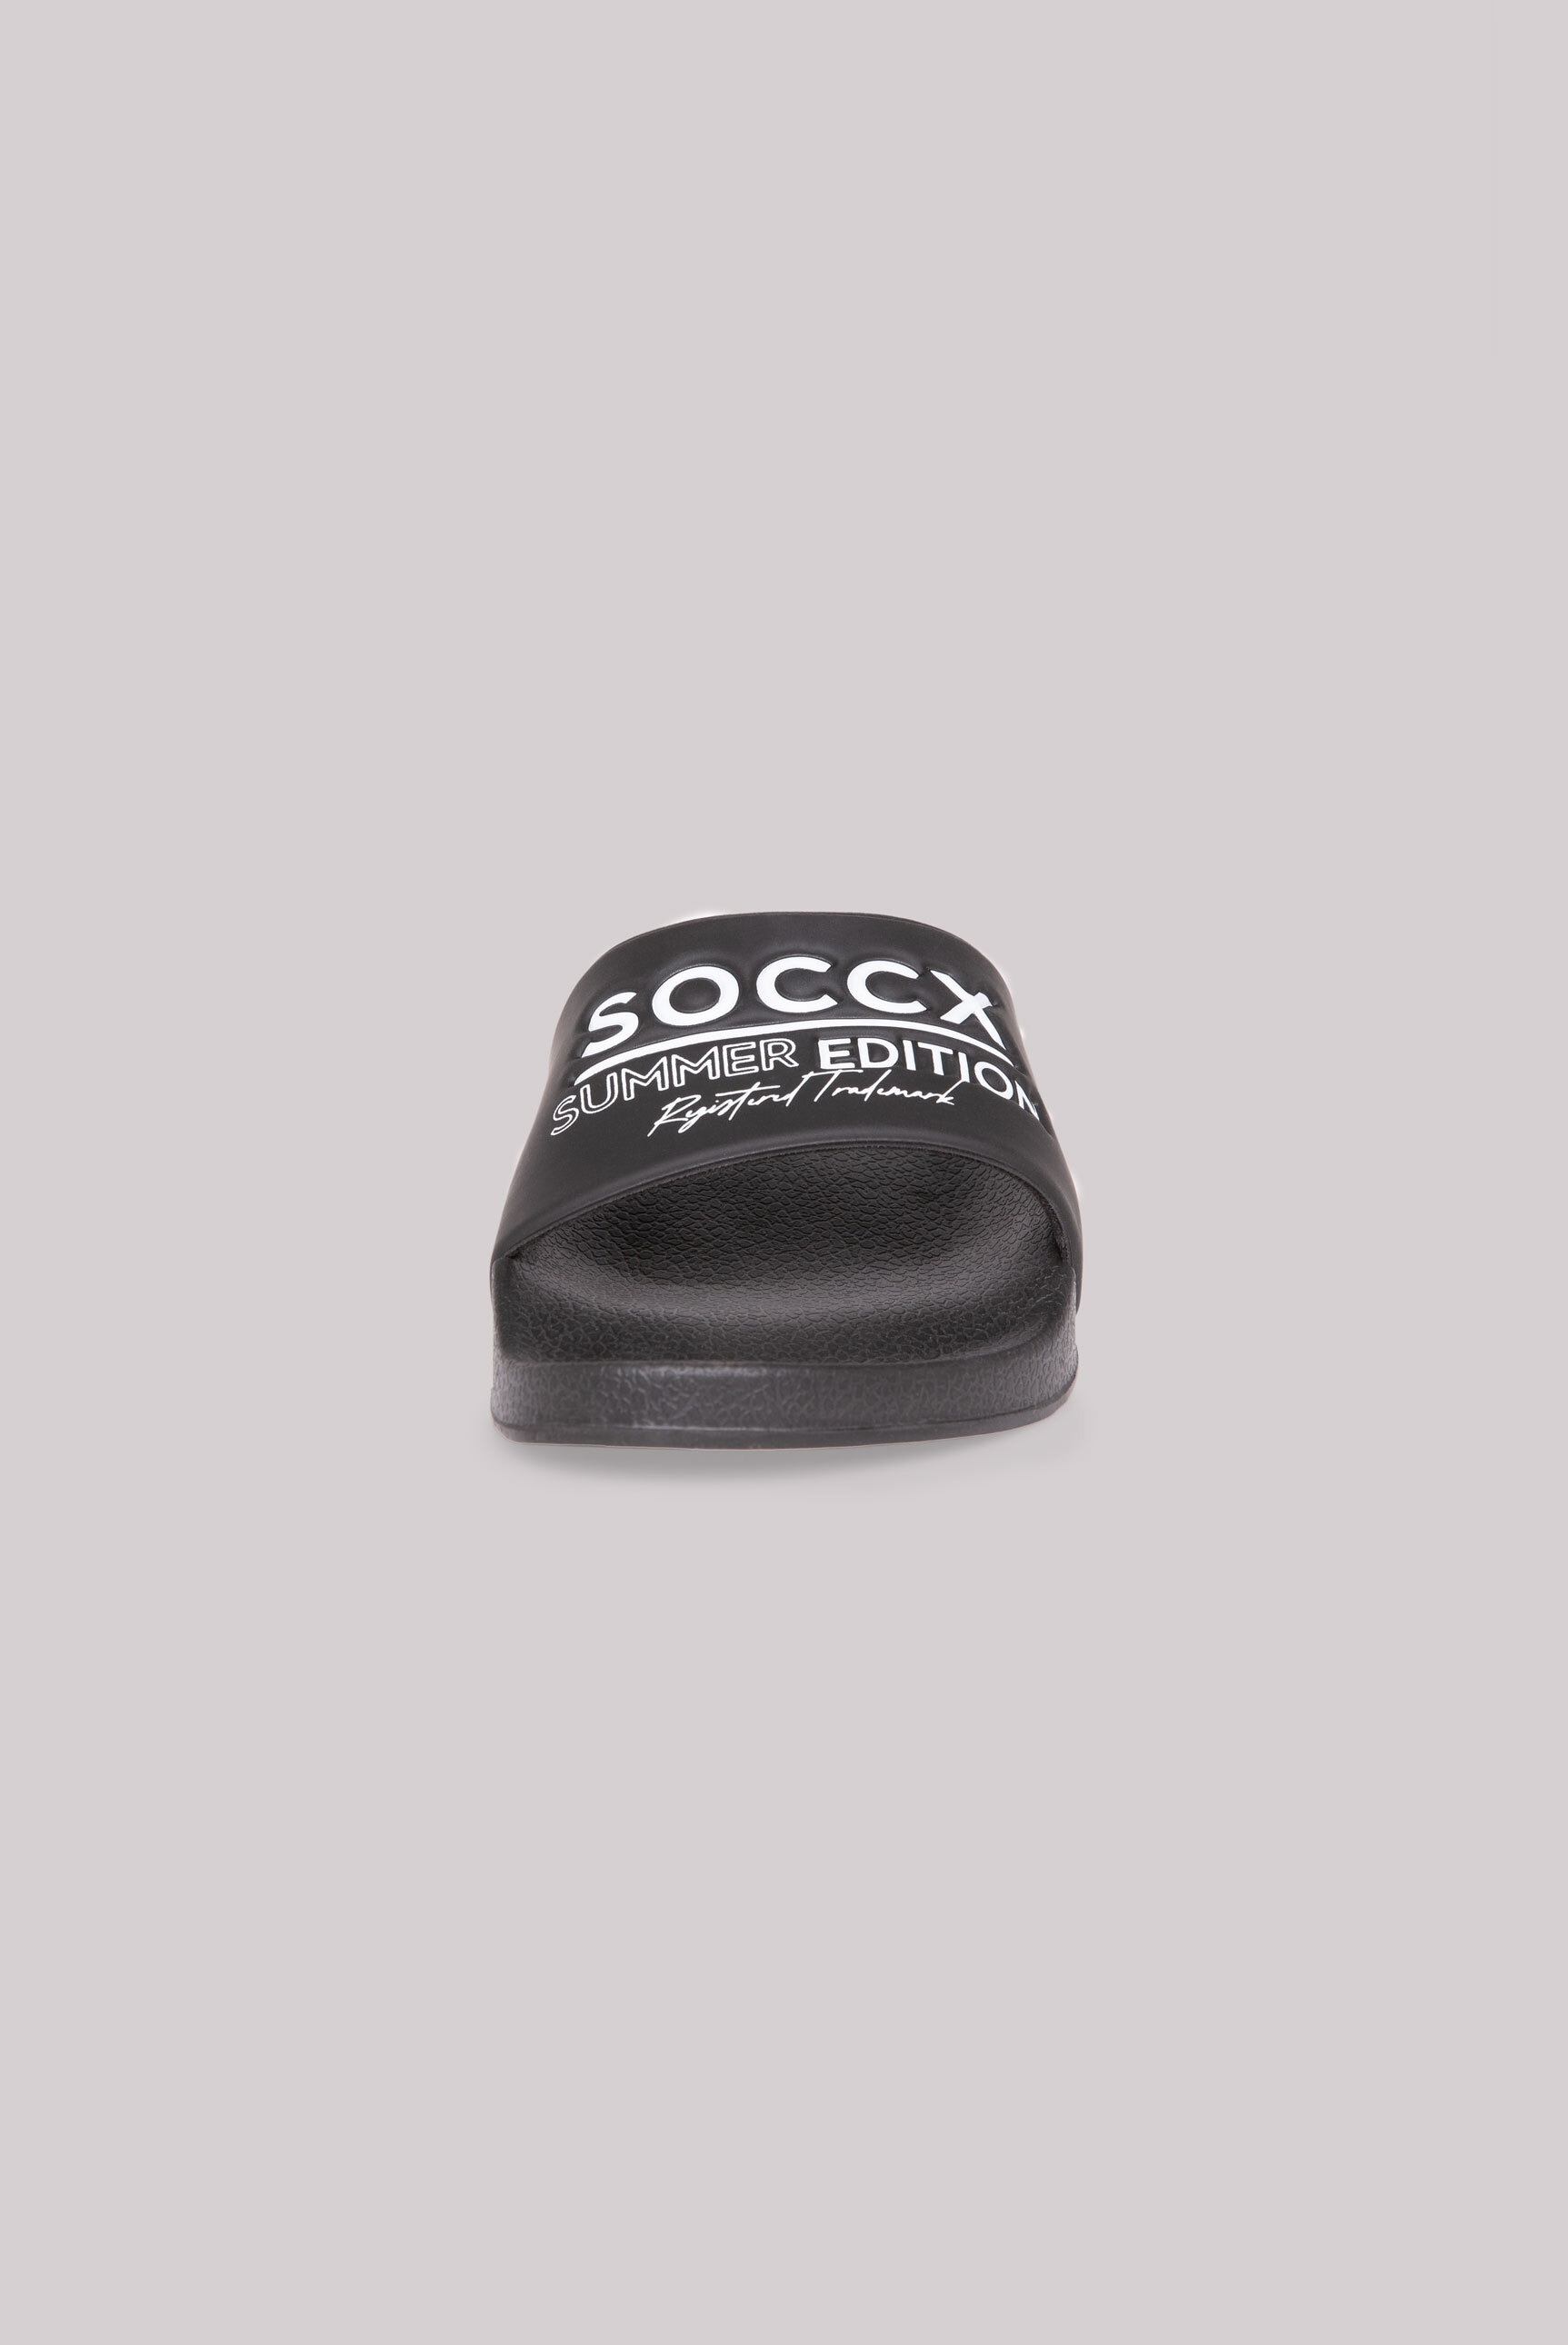 SOCCX Pantolette, für Nassräume geeignet